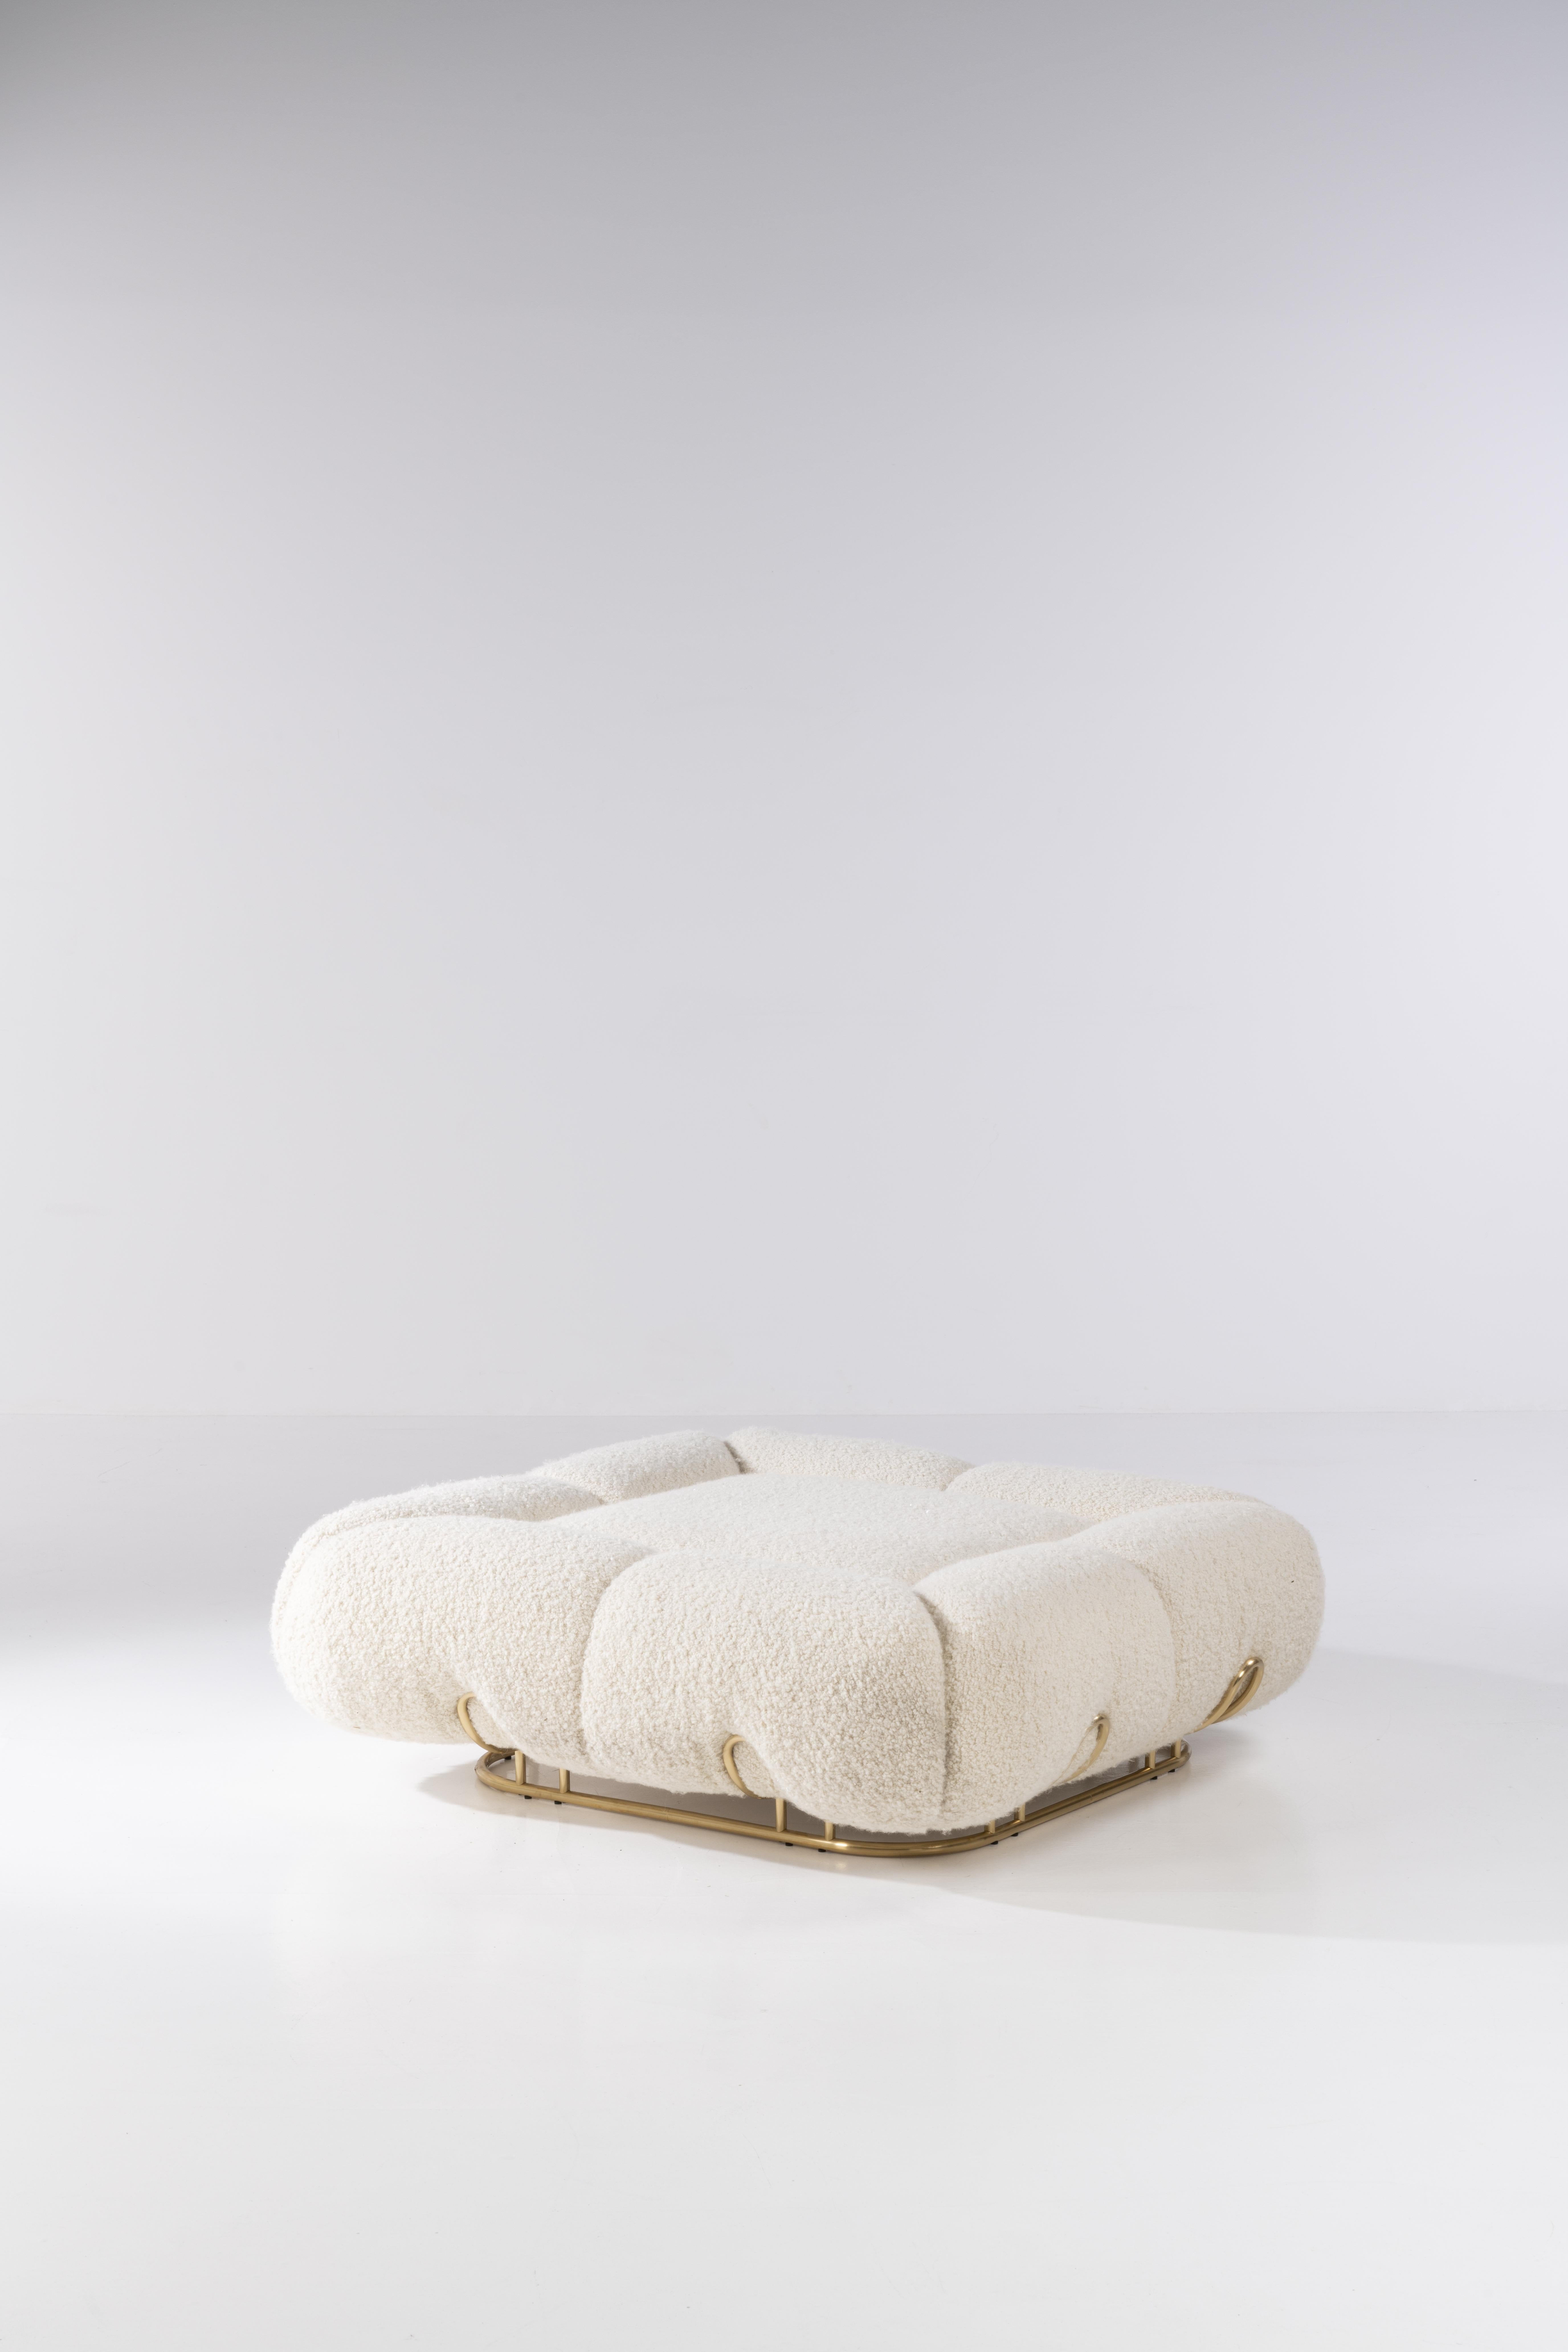 Einzigartiger Hocker Marshmallow von Draga & Aurel
Abmessungen: B 120 T 120 H 38
MATERIALIEN: Wolle 

Köstlich weich und flauschig. Das ist das Design des Marshmallow-Puffs, dessen weiche Formen seinem Namen alle Ehre machen. Er zeichnet sich